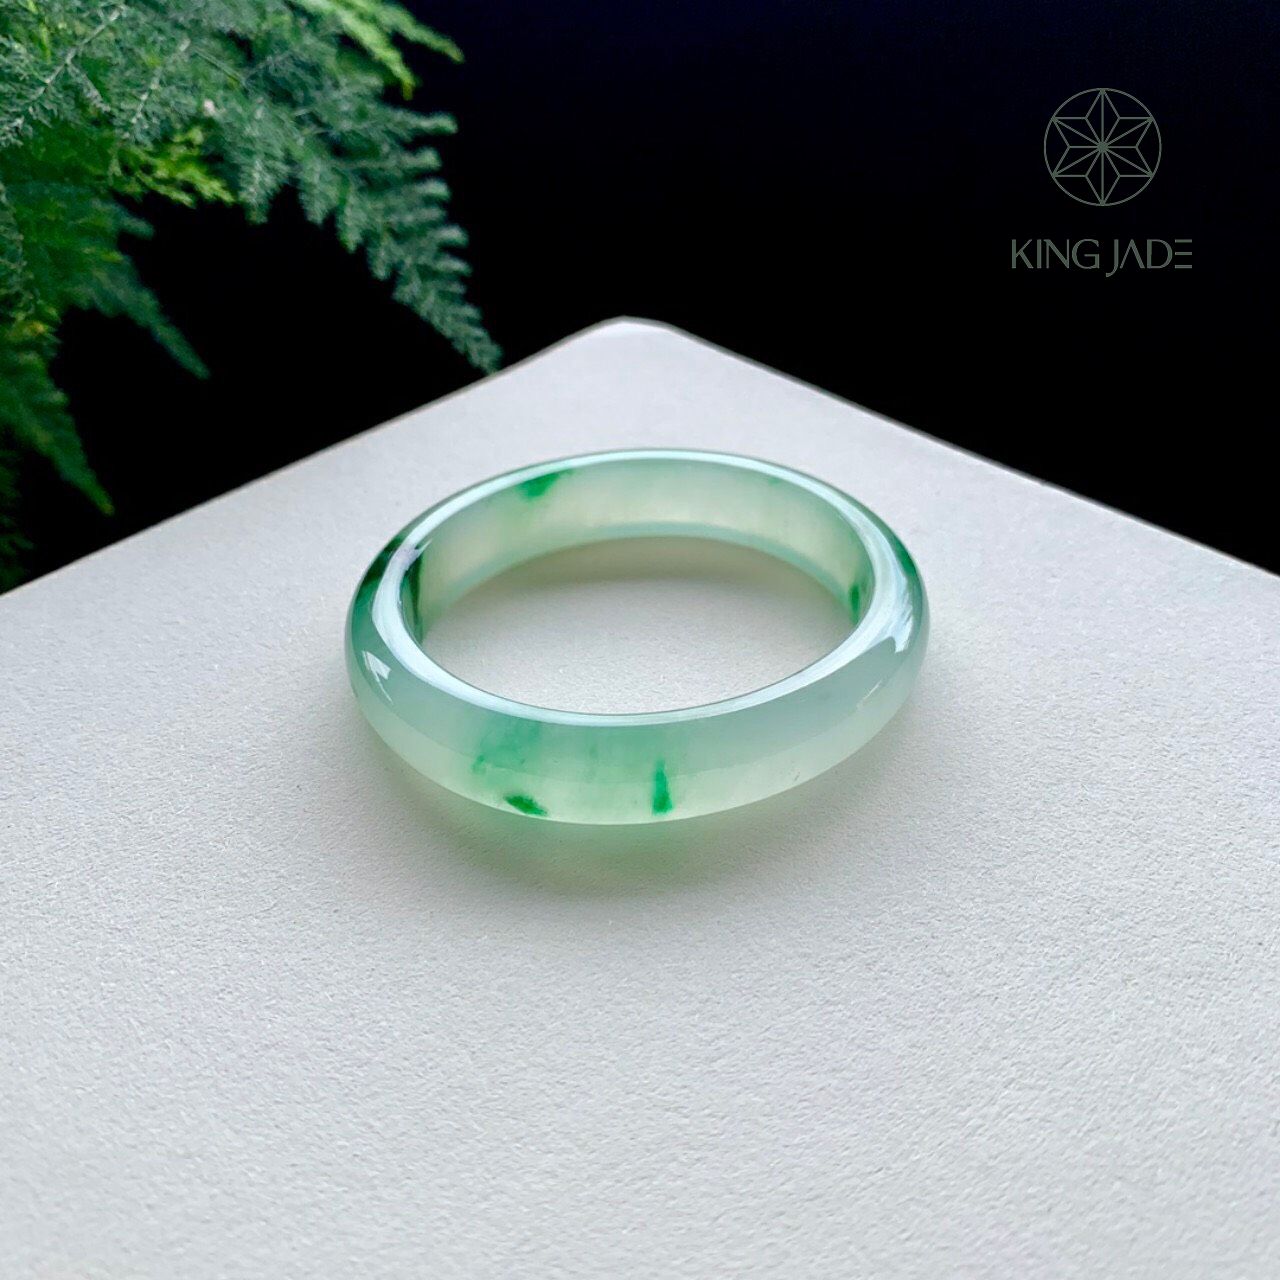 Vòng Ngọc Phỉ Thúy King Jade 035 - Sự Giá Trị từ Ánh Nhìn Đầu Tiên